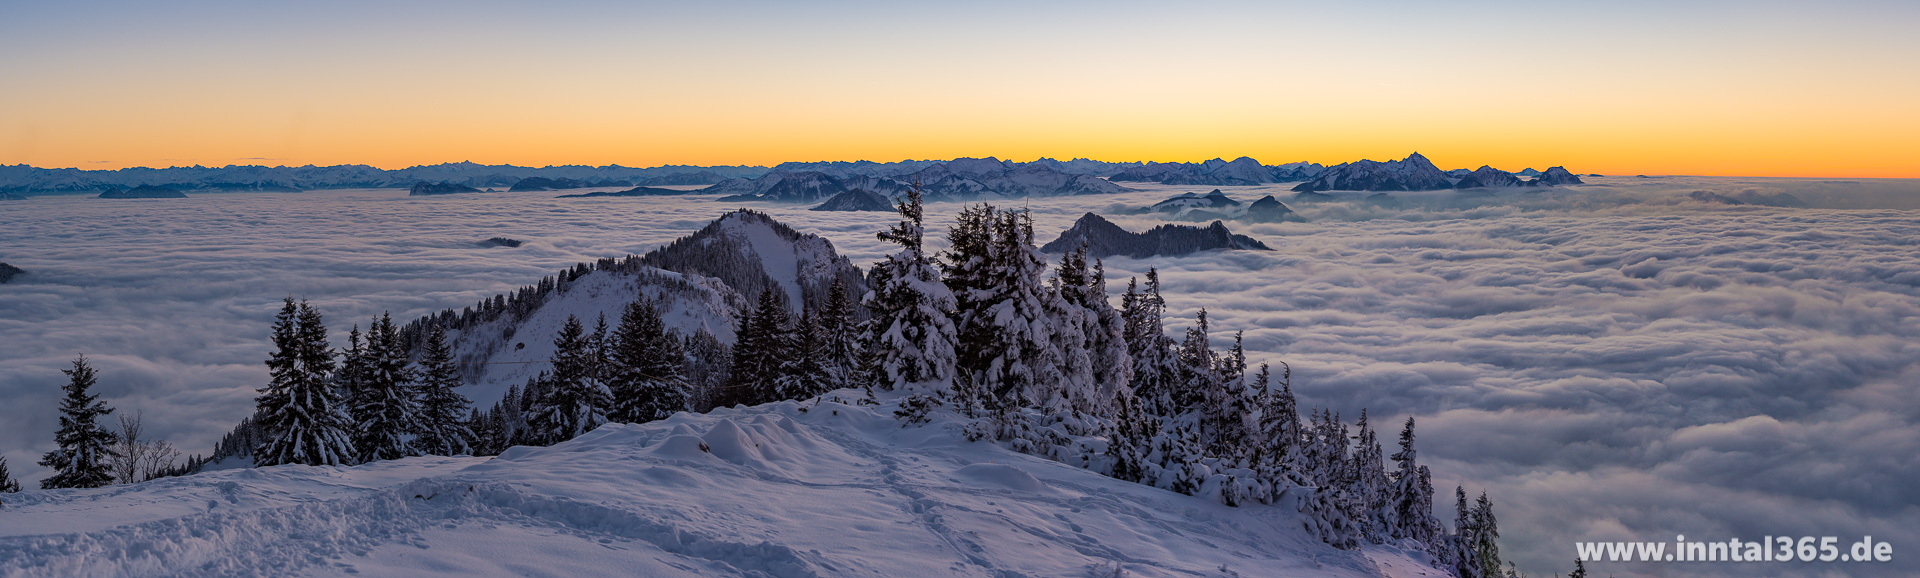 16.11.2016 - Abenddämmerung an der Hochrieshütte. Panorama mit Blick Richtung Süd-West.